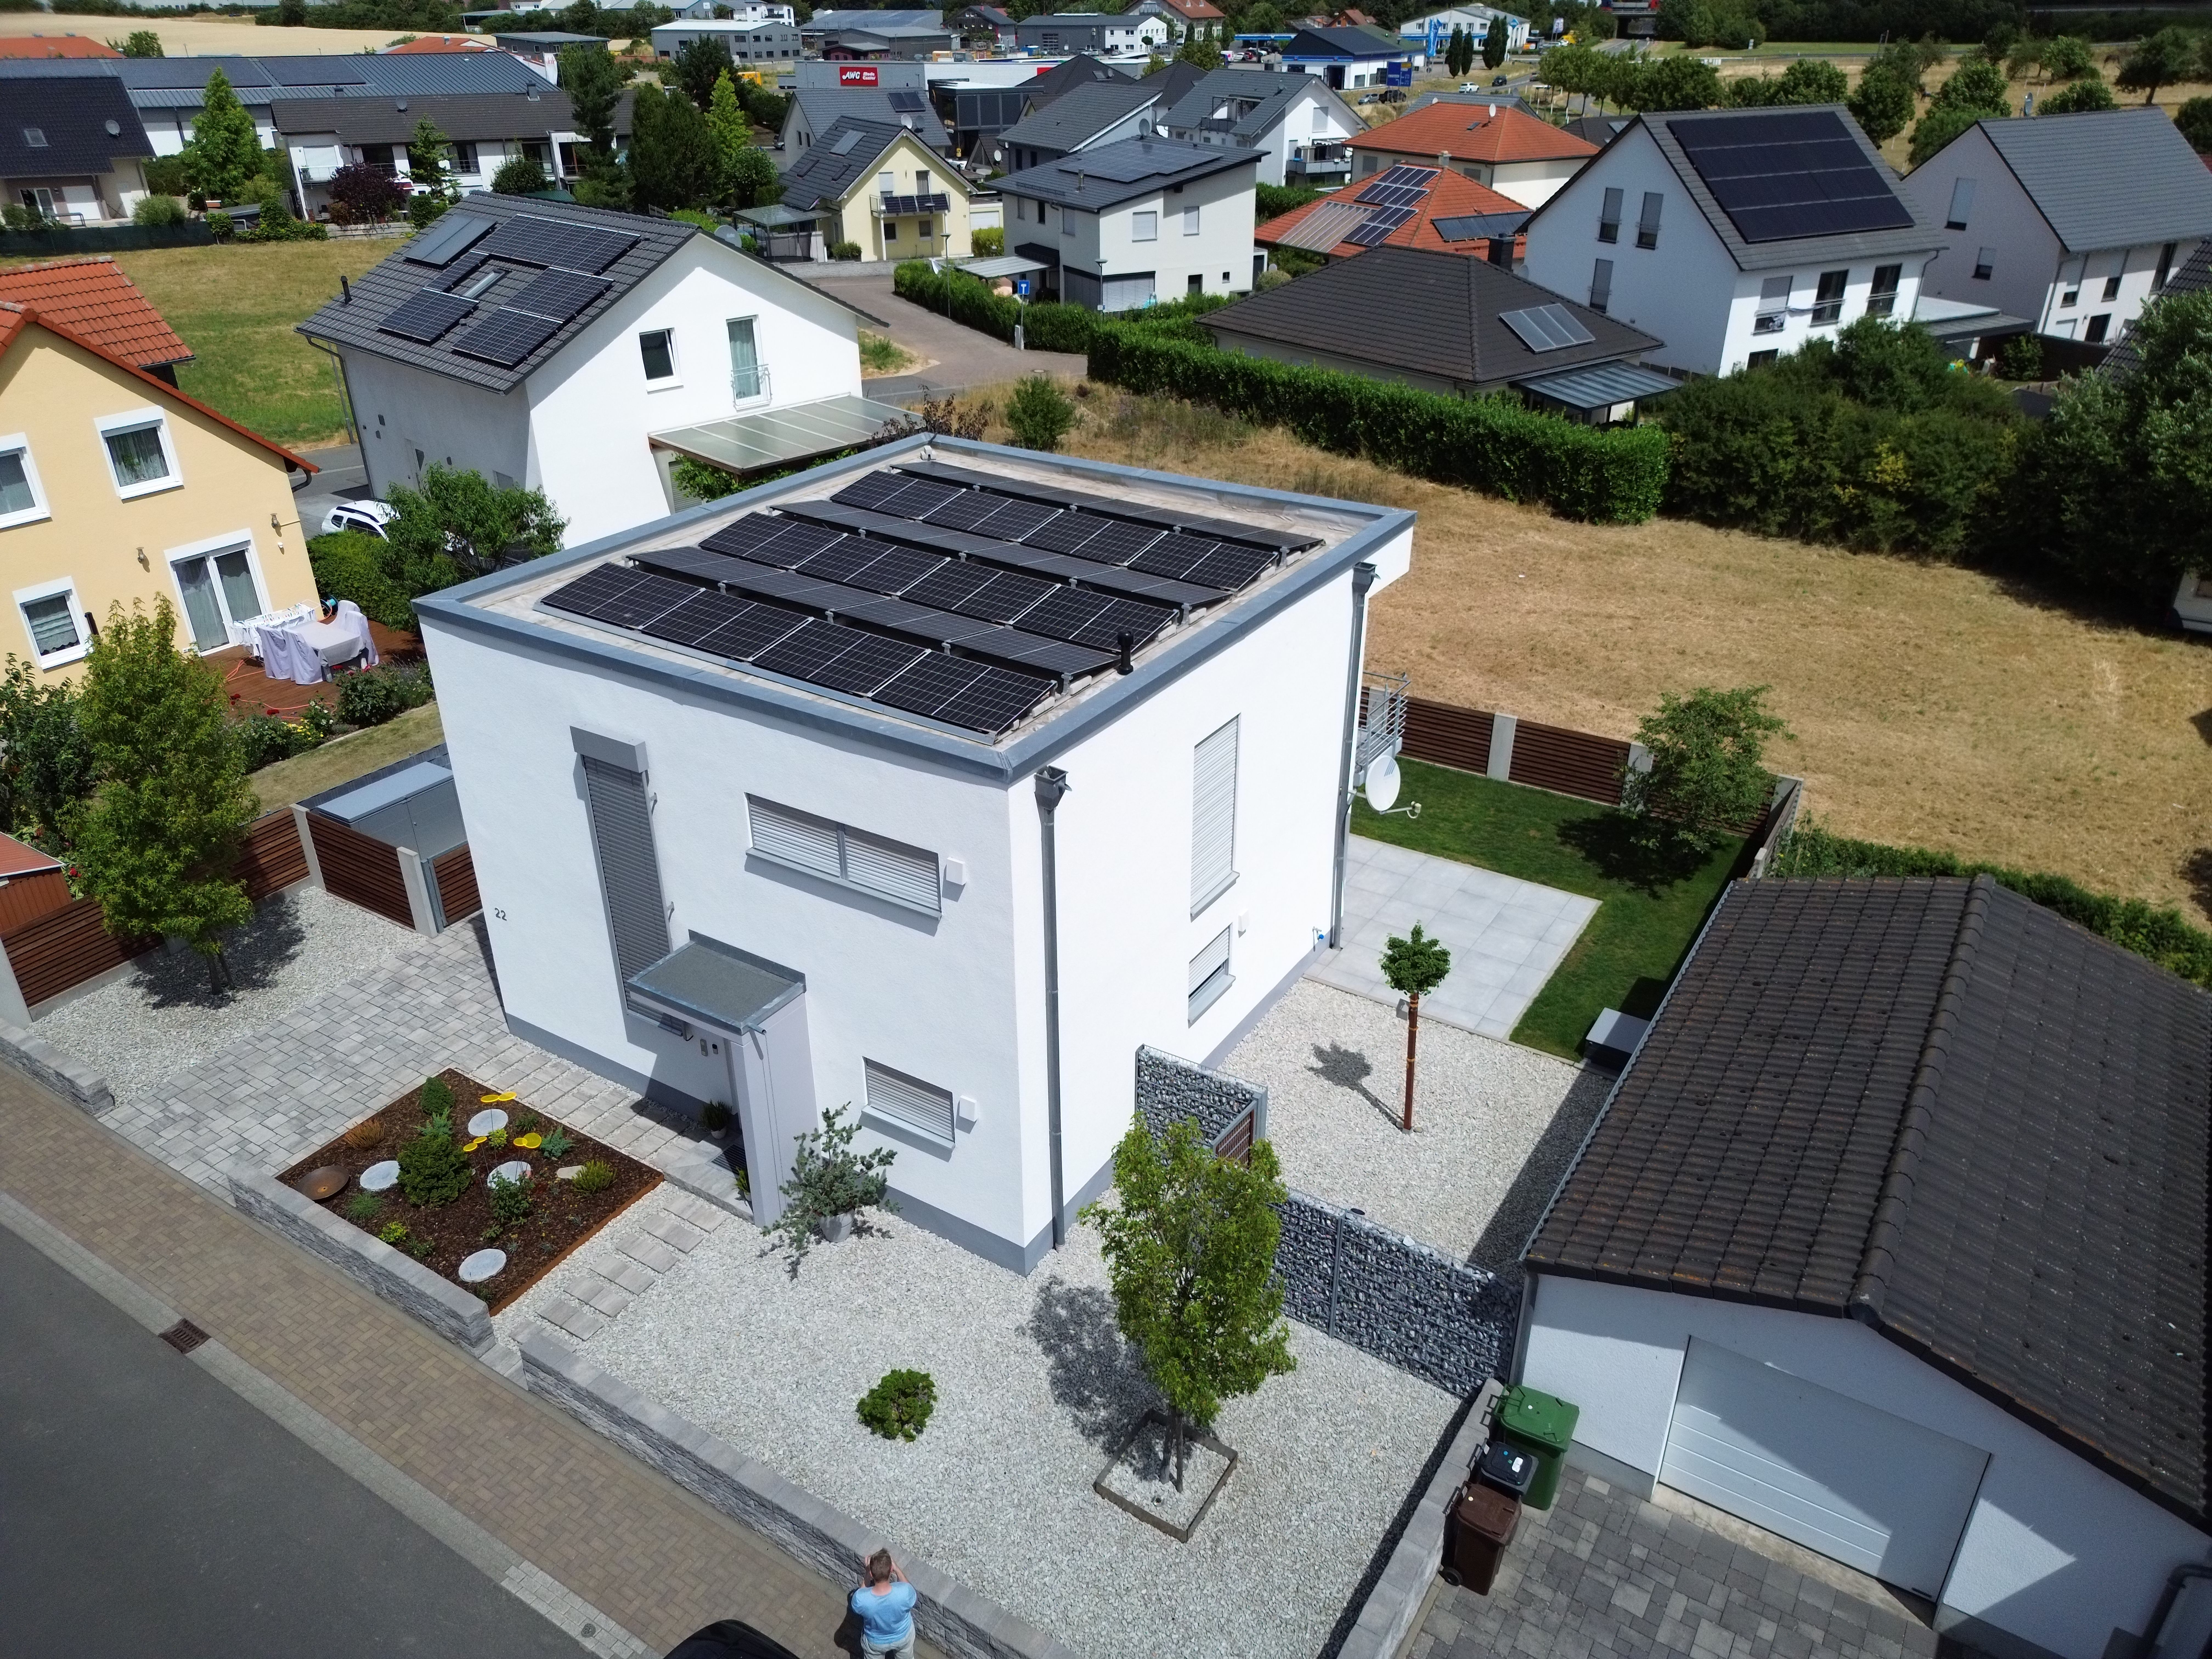 Einfamilienhaus mit Photovoltaikanlage auf der kompletten Dachfläche